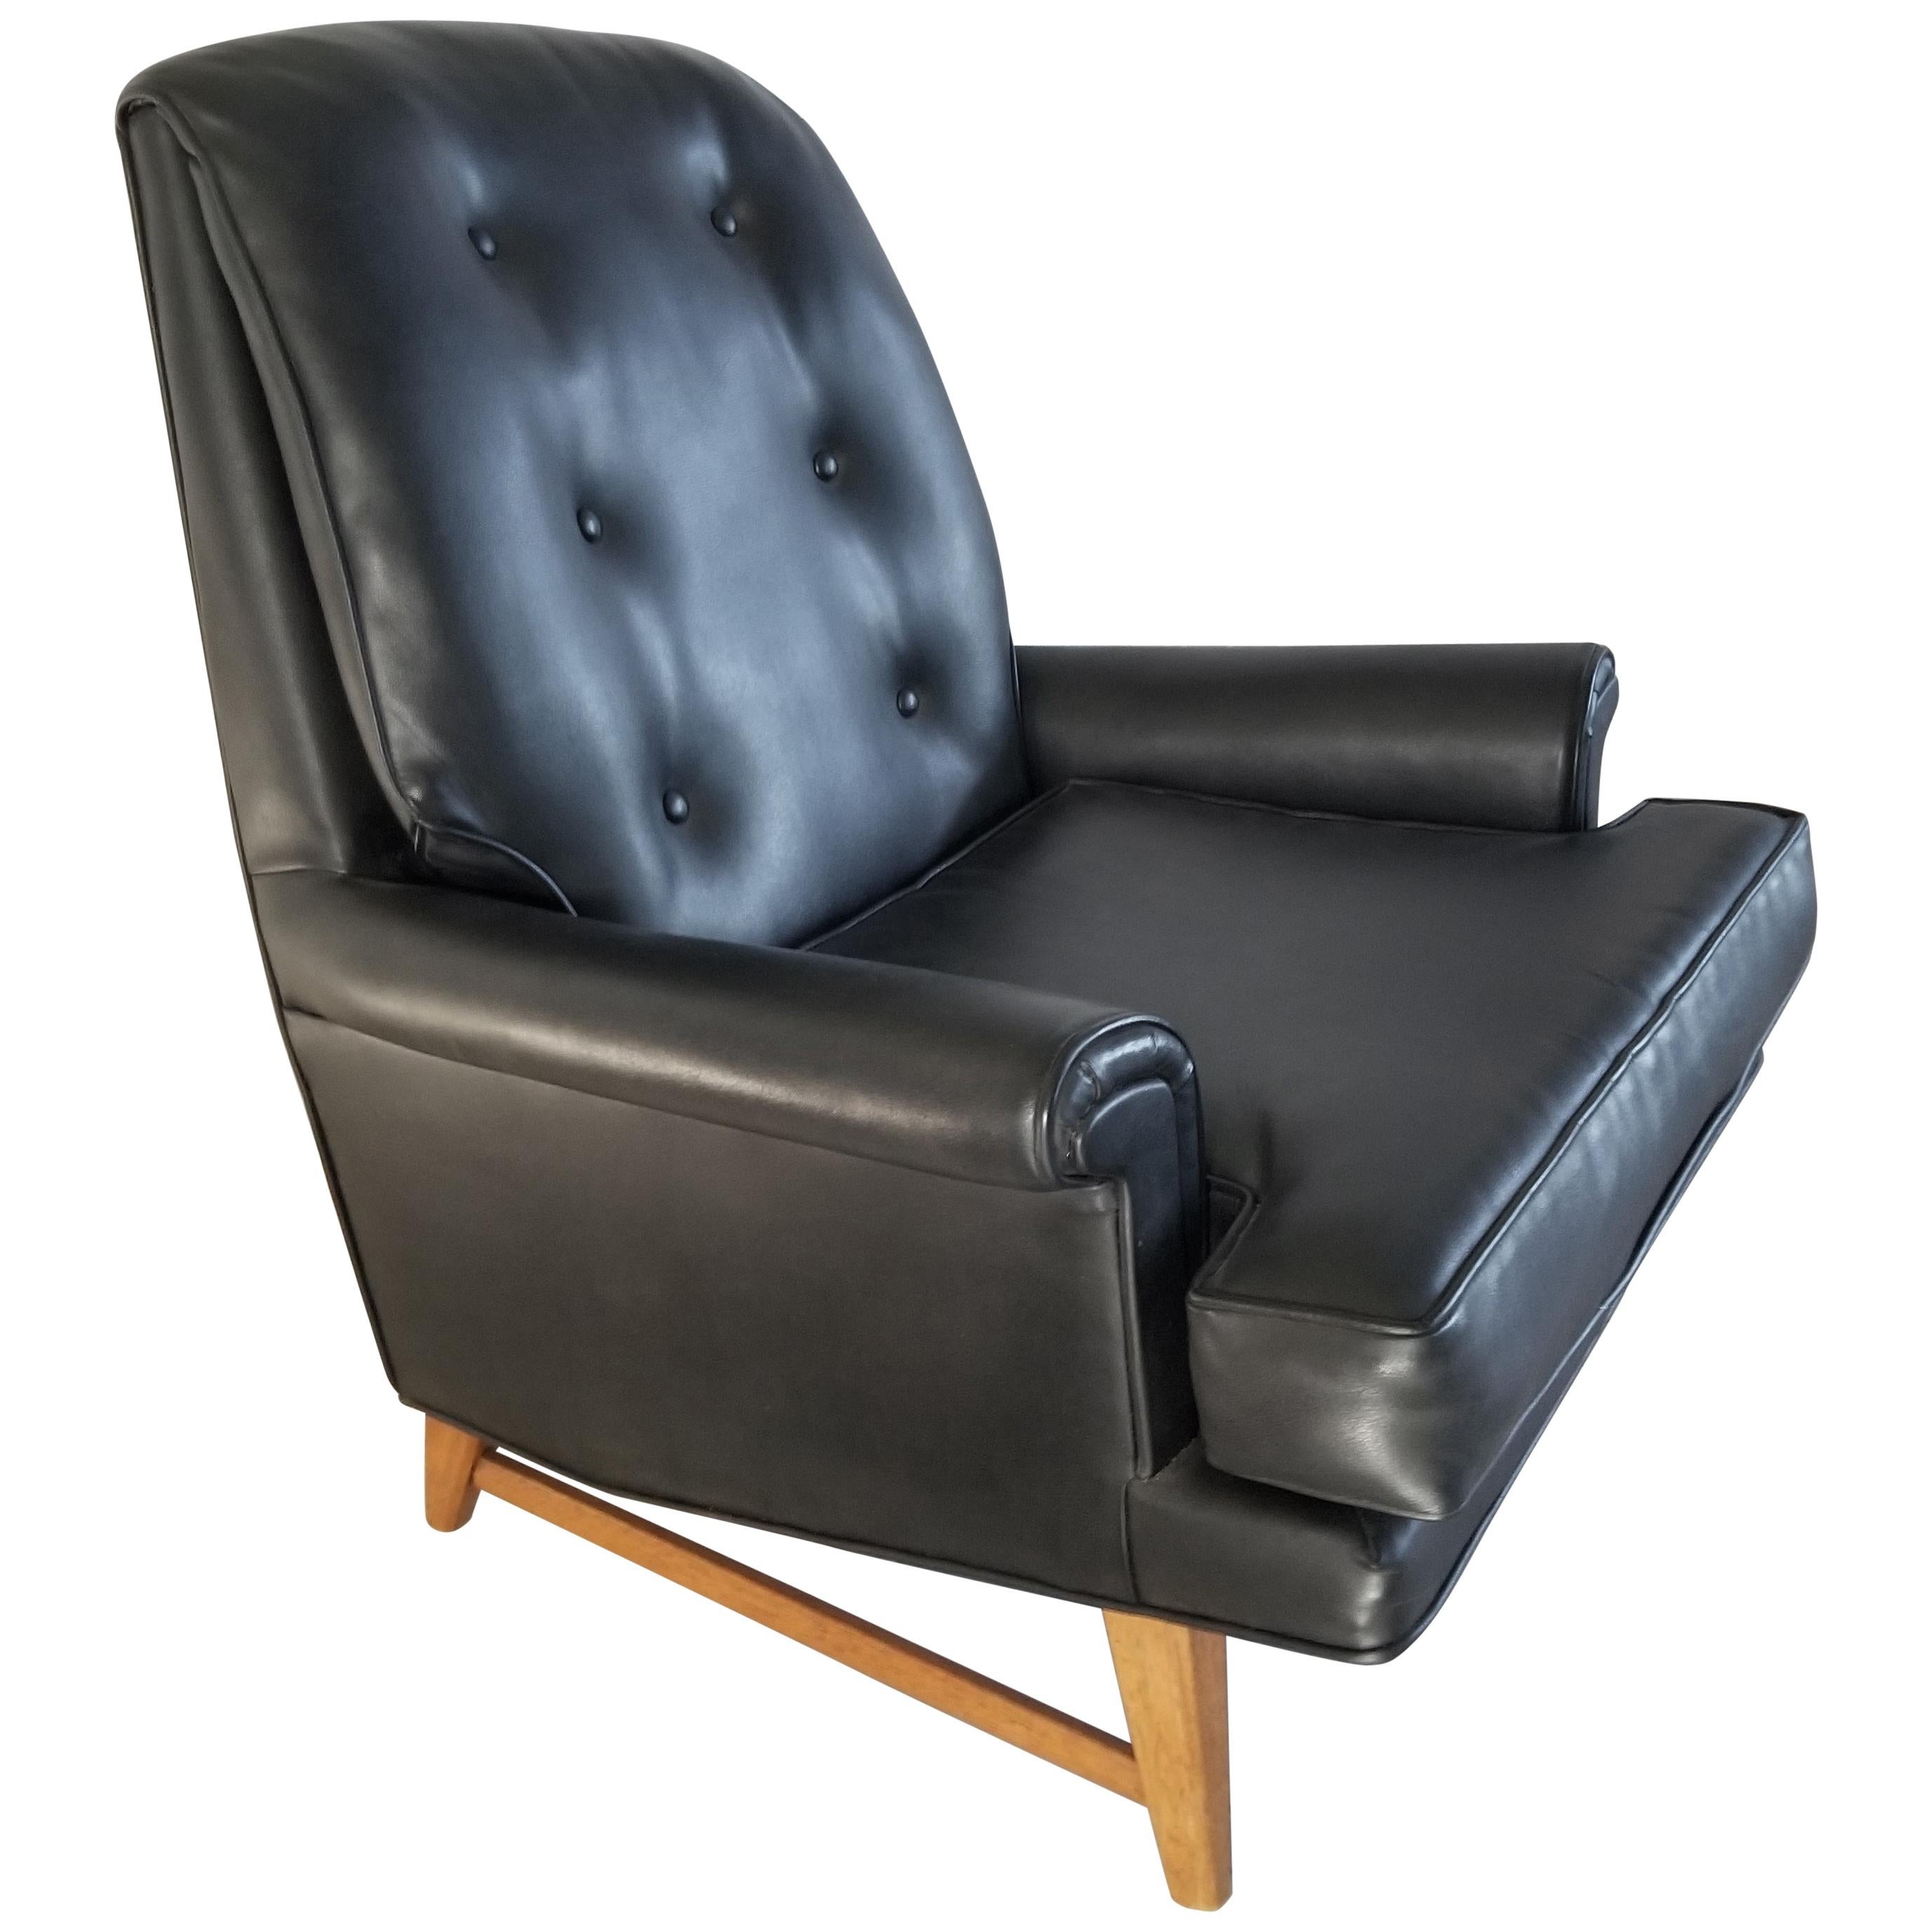 Handsome Heritage Schwarz Kunstleder Lounge Stuhl 
Edward Wormley für Dunbar Möbel Era Classic 1950s
Kunstleder, das wirklich wie Leder aussieht.
Komfort und gutes Aussehen auf einem starken Mahagoniholzsockel.
Signiertes Heritage Label
32,5 B x